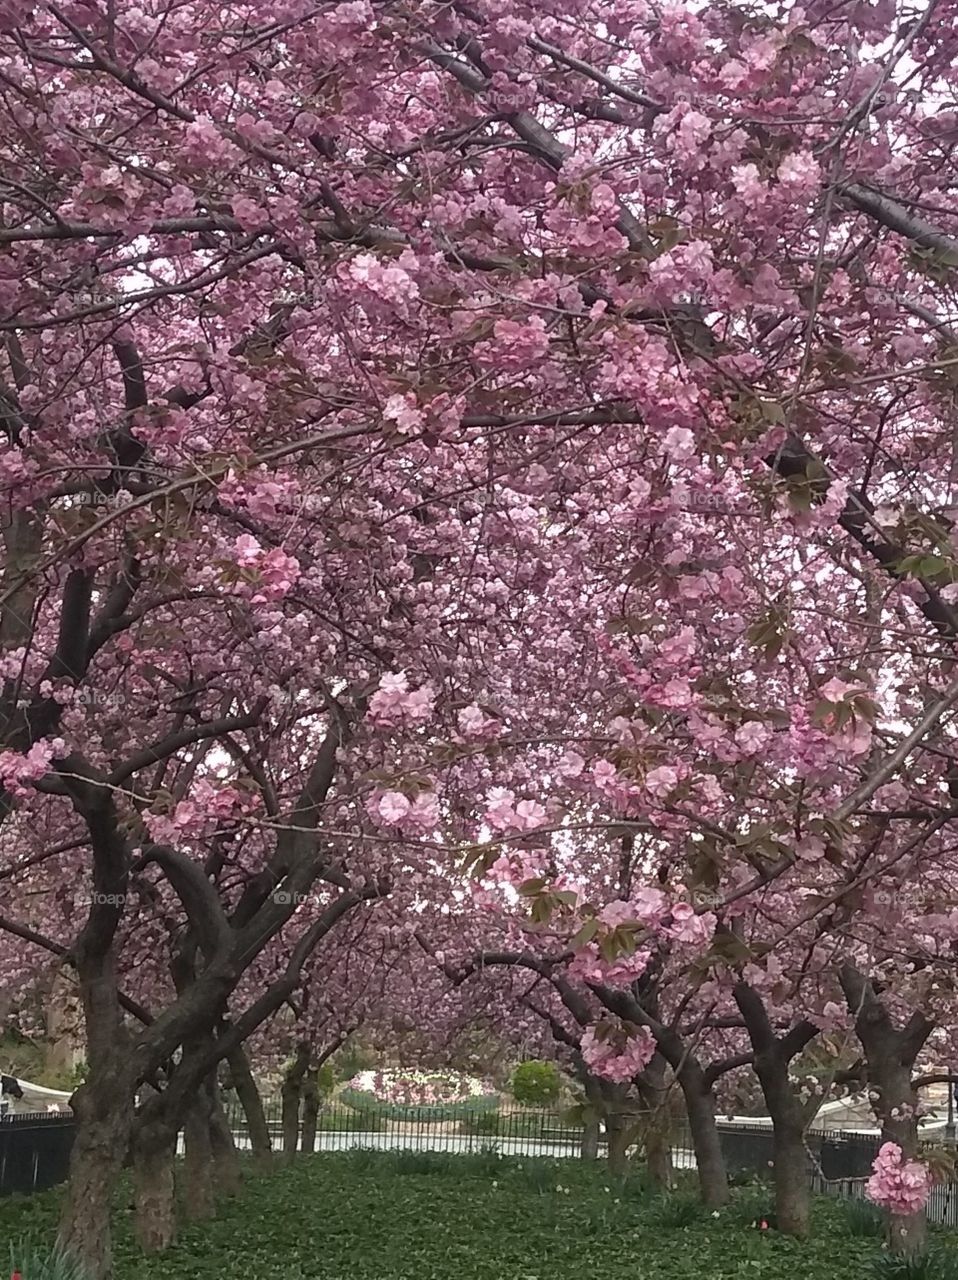 Flowering Trees NYC Park